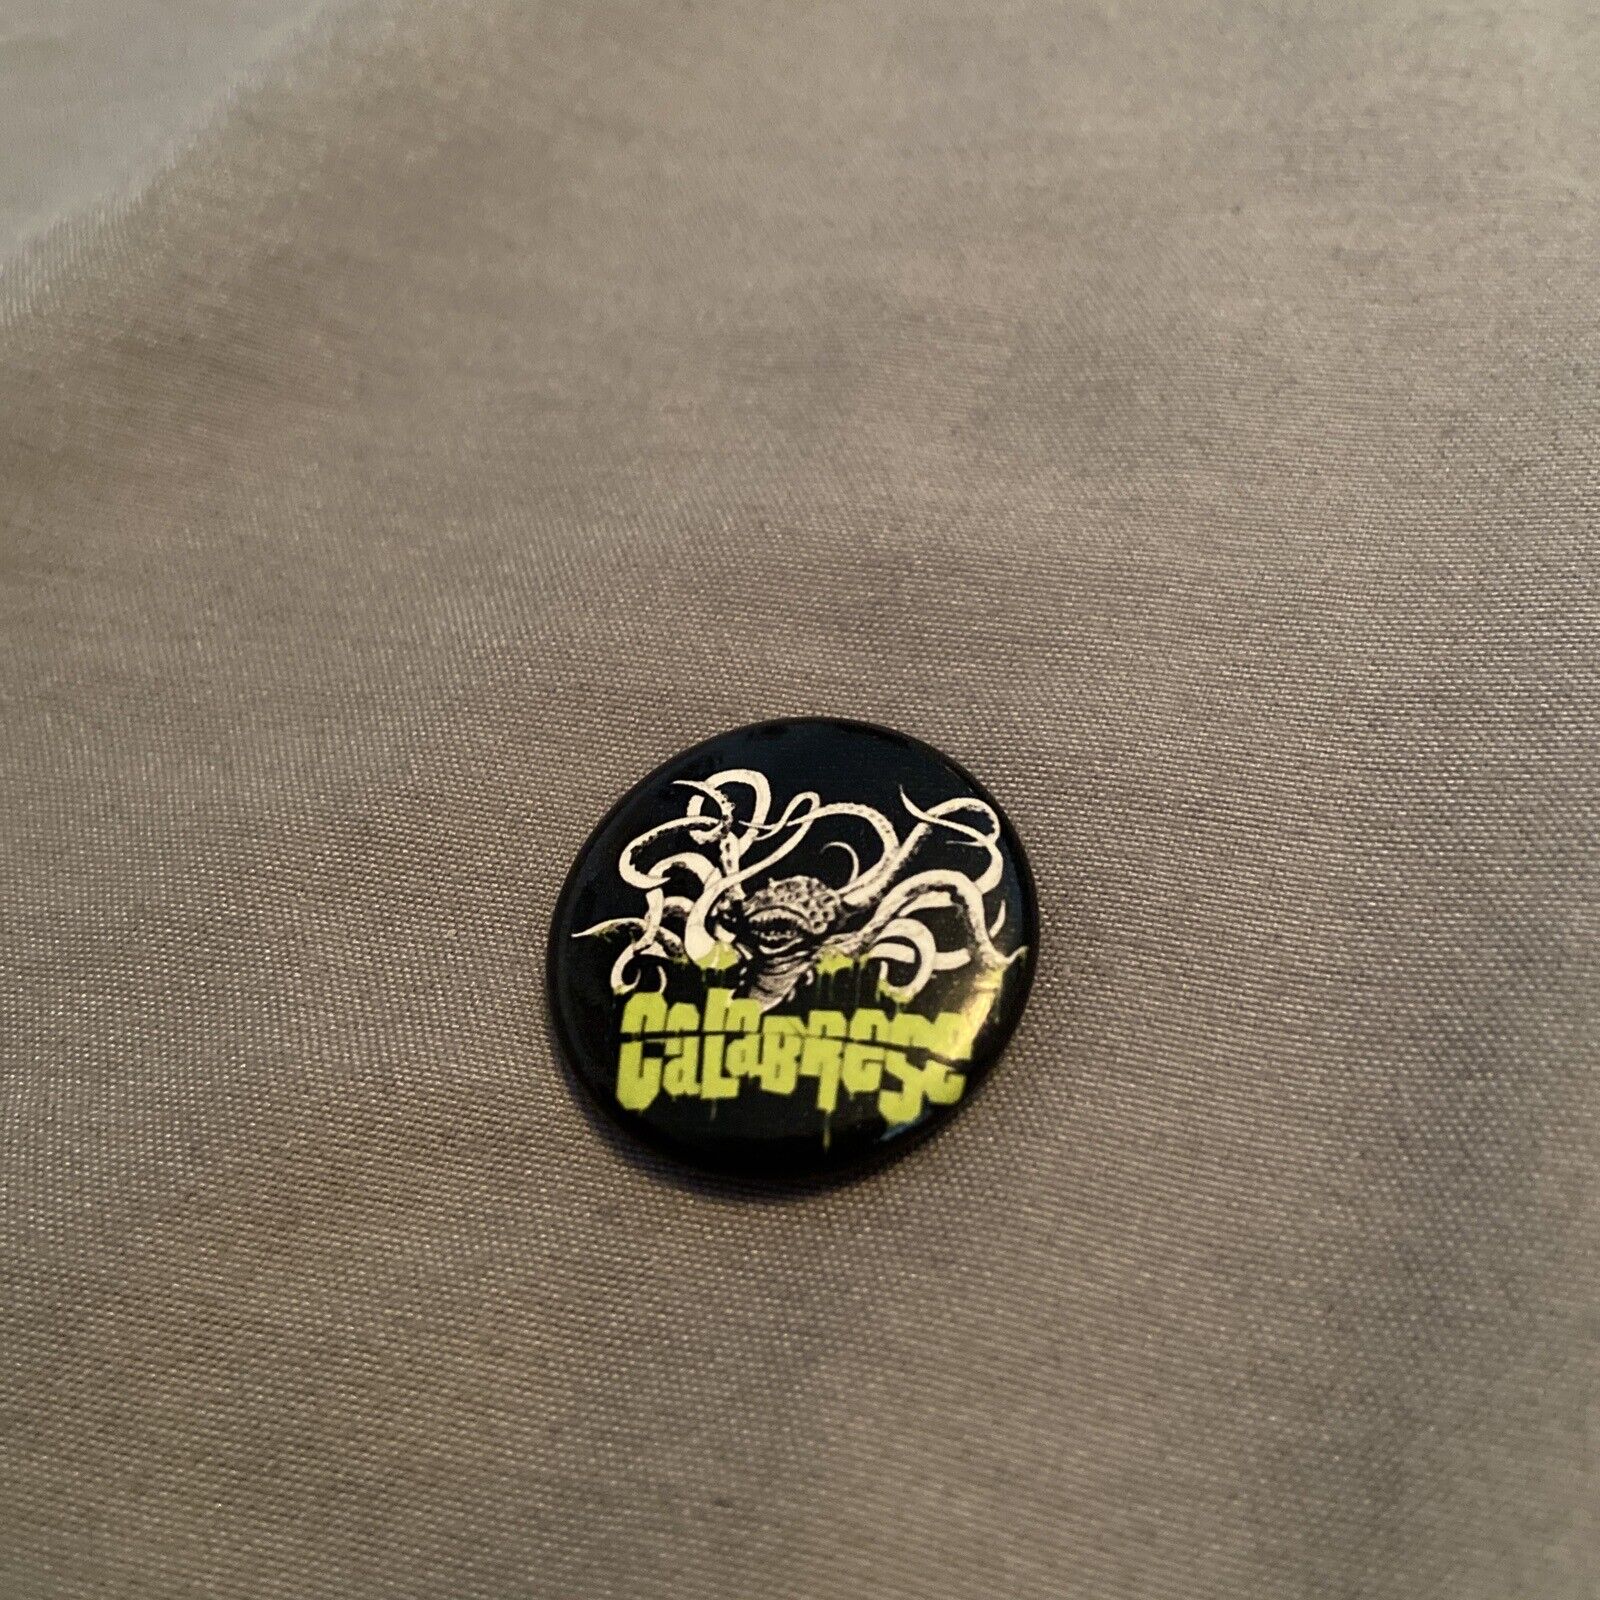 Rare Calabrese Rock Band Button Pin Horror Punk